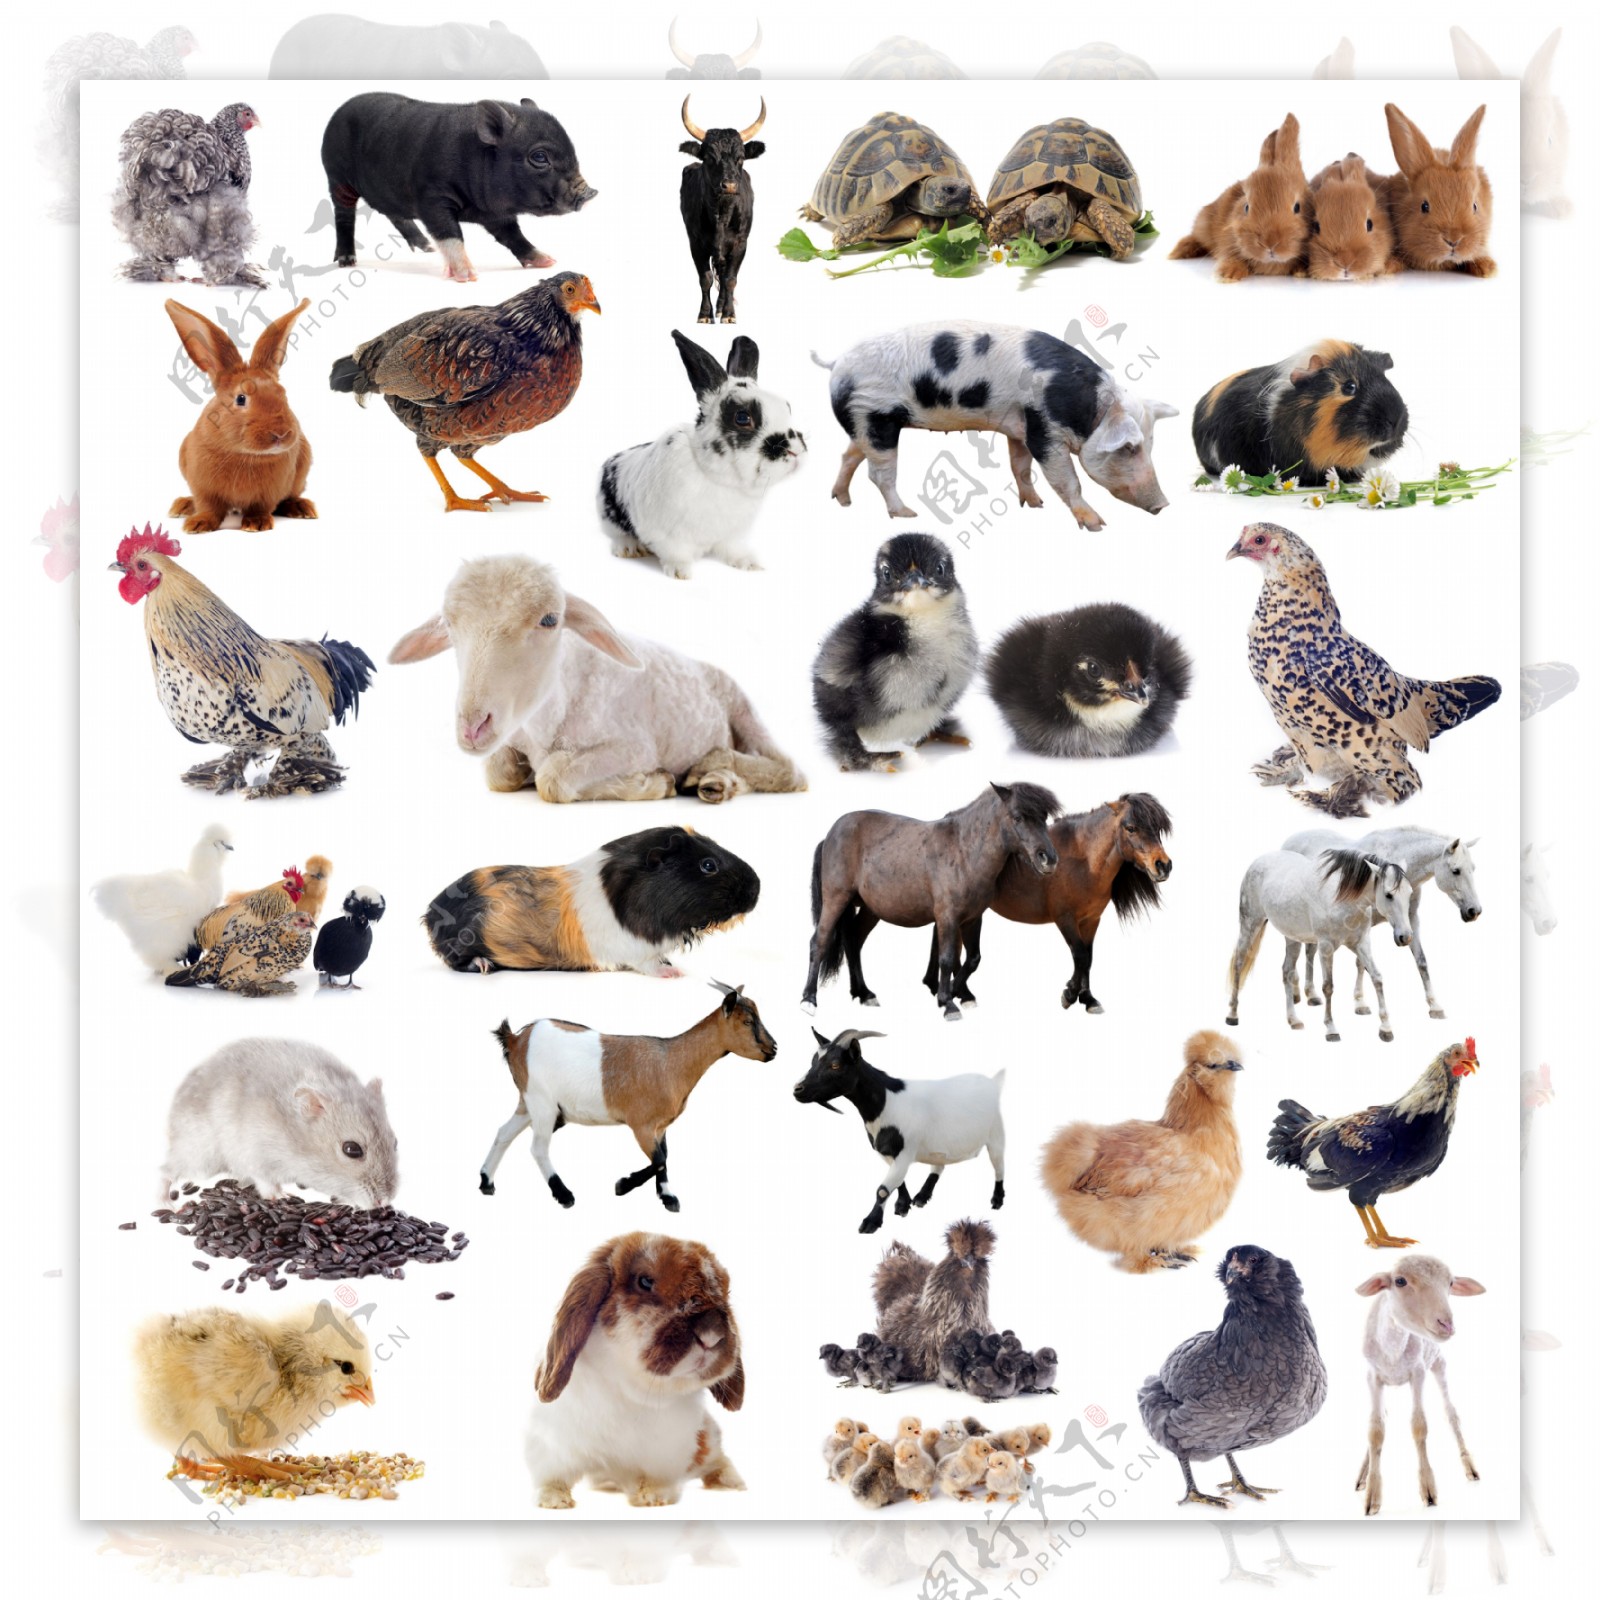 29种常见动物高清图片